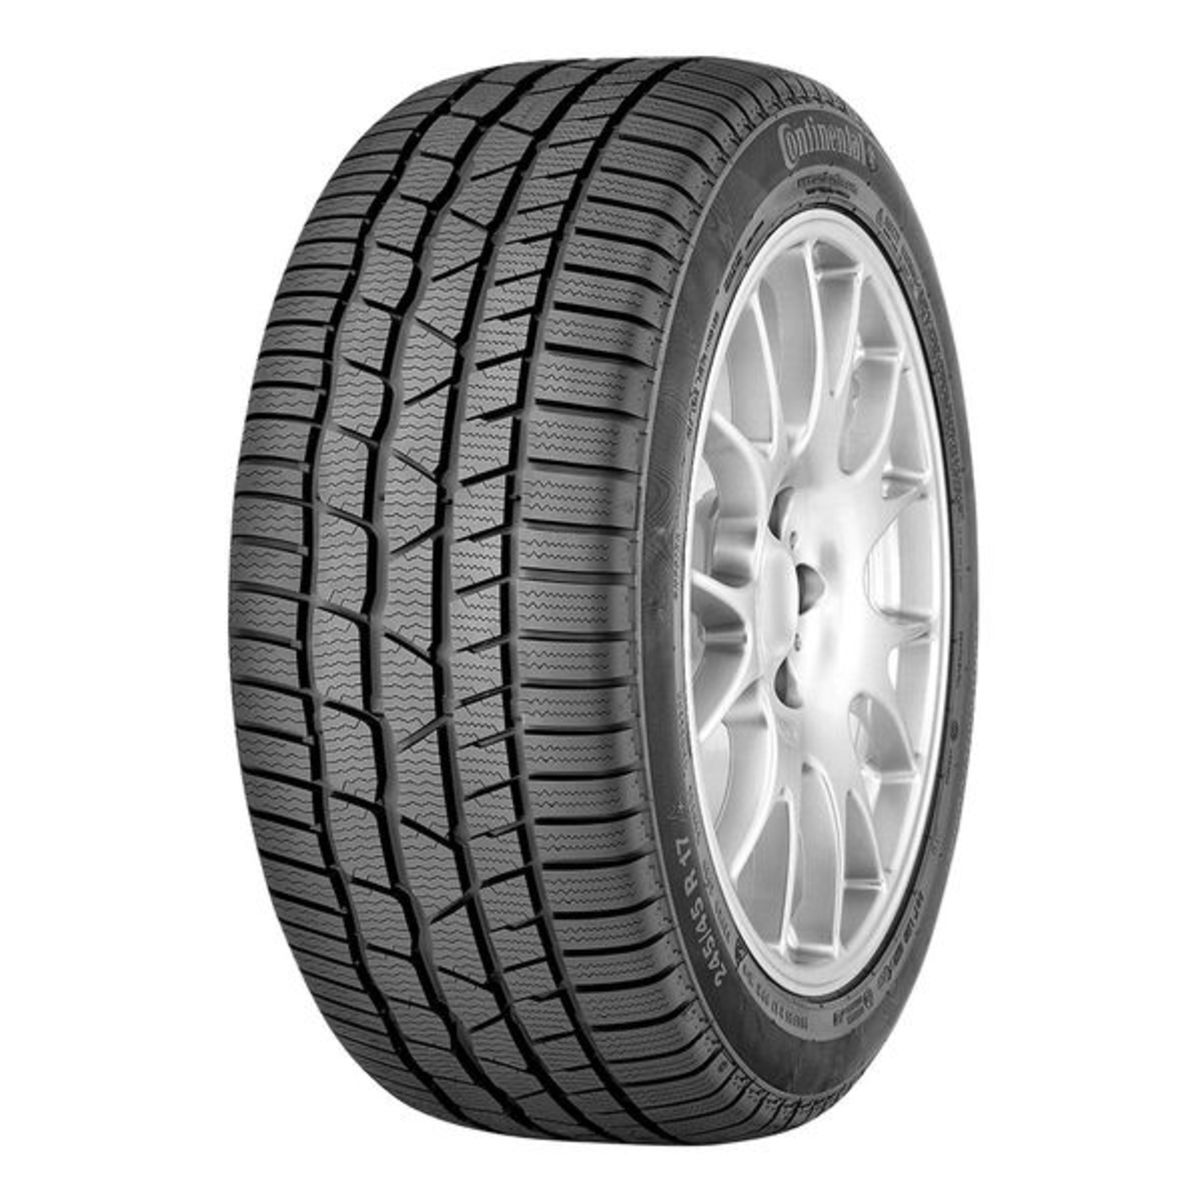 Neumáticos de invierno CONTINENTAL ContiWinterContact TS 830 P 235/55R17 99H